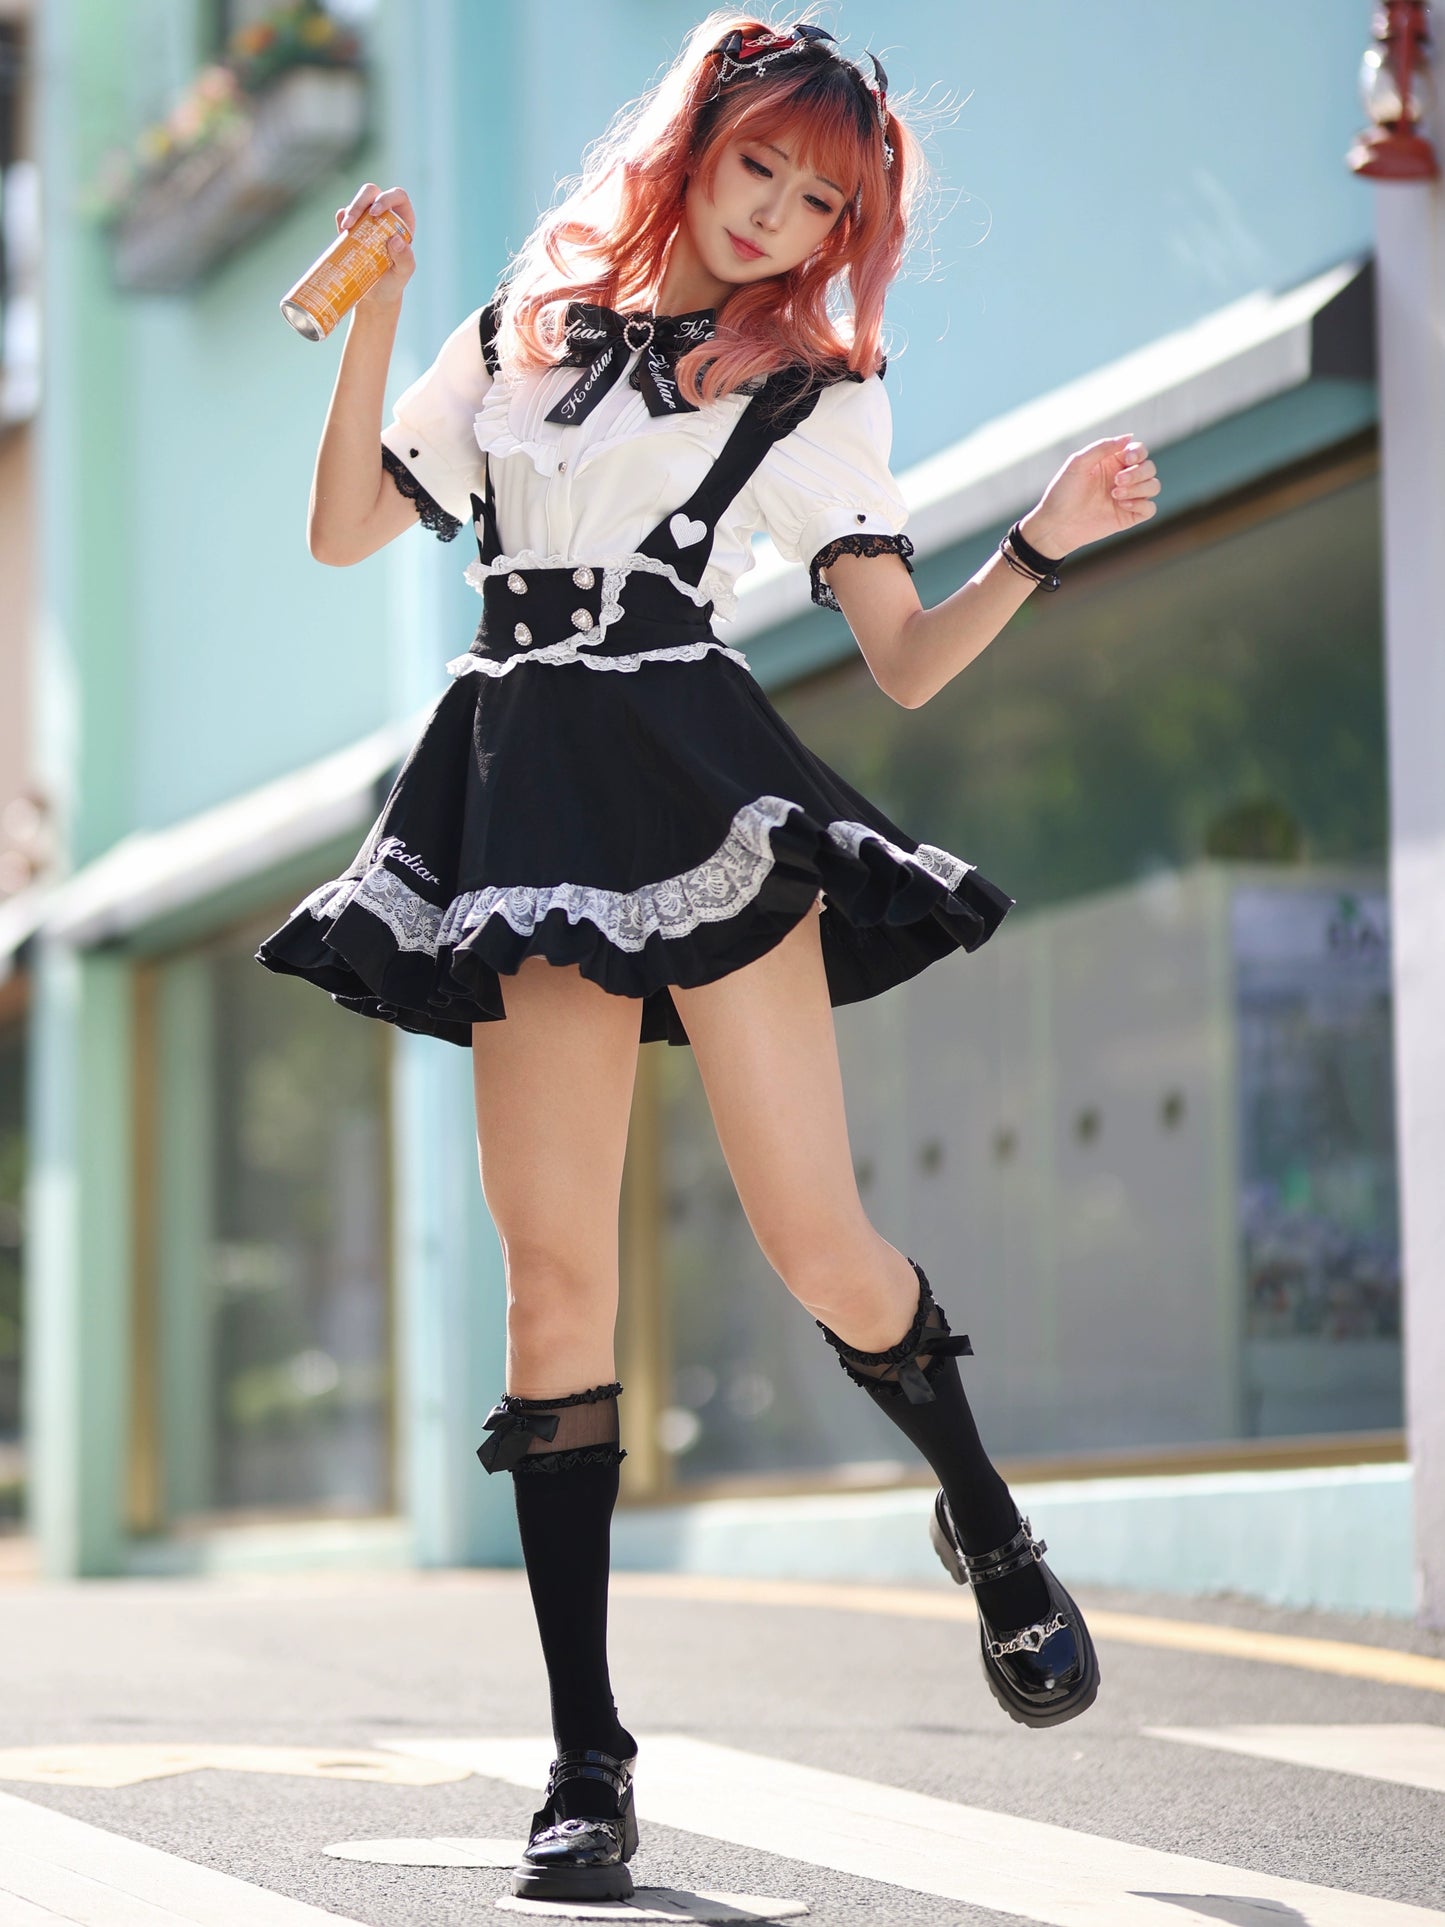 Jirai Kei Skirt Black Lace Suspender Skirt Cat Ear Skirt 37692:568728